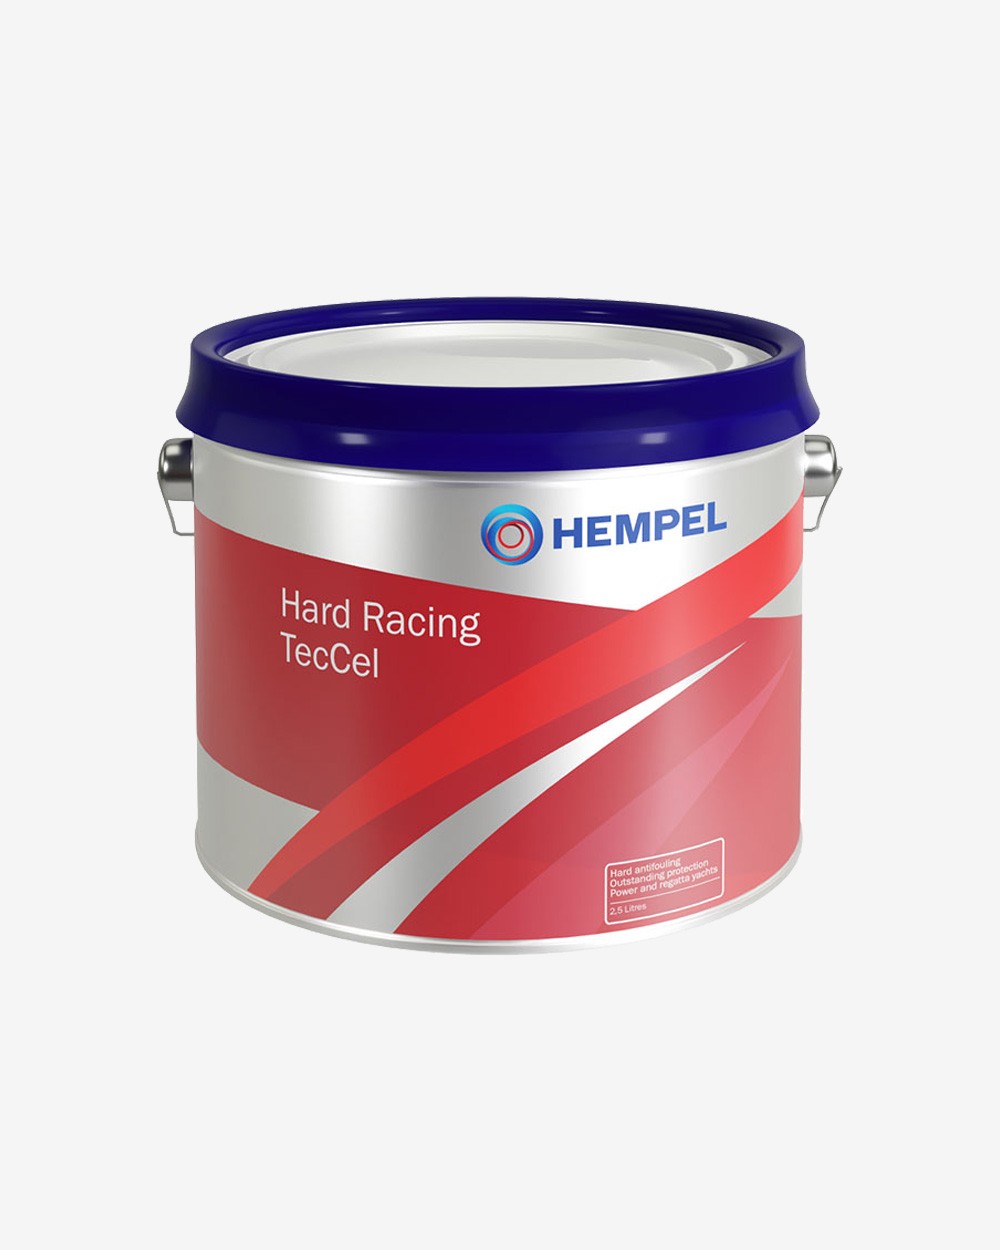 Billede af Hempel Hard Racing TecCel, 2.5 liter hos Picment.dk